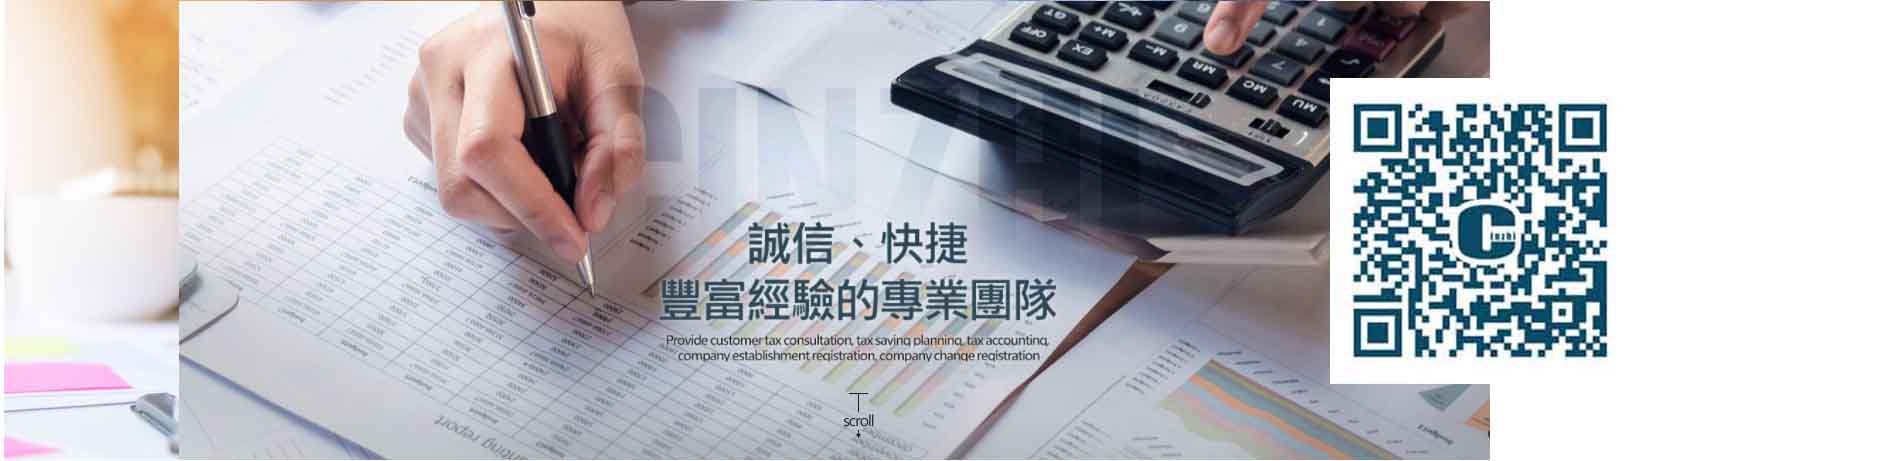 台北申請公司台北會計事務所